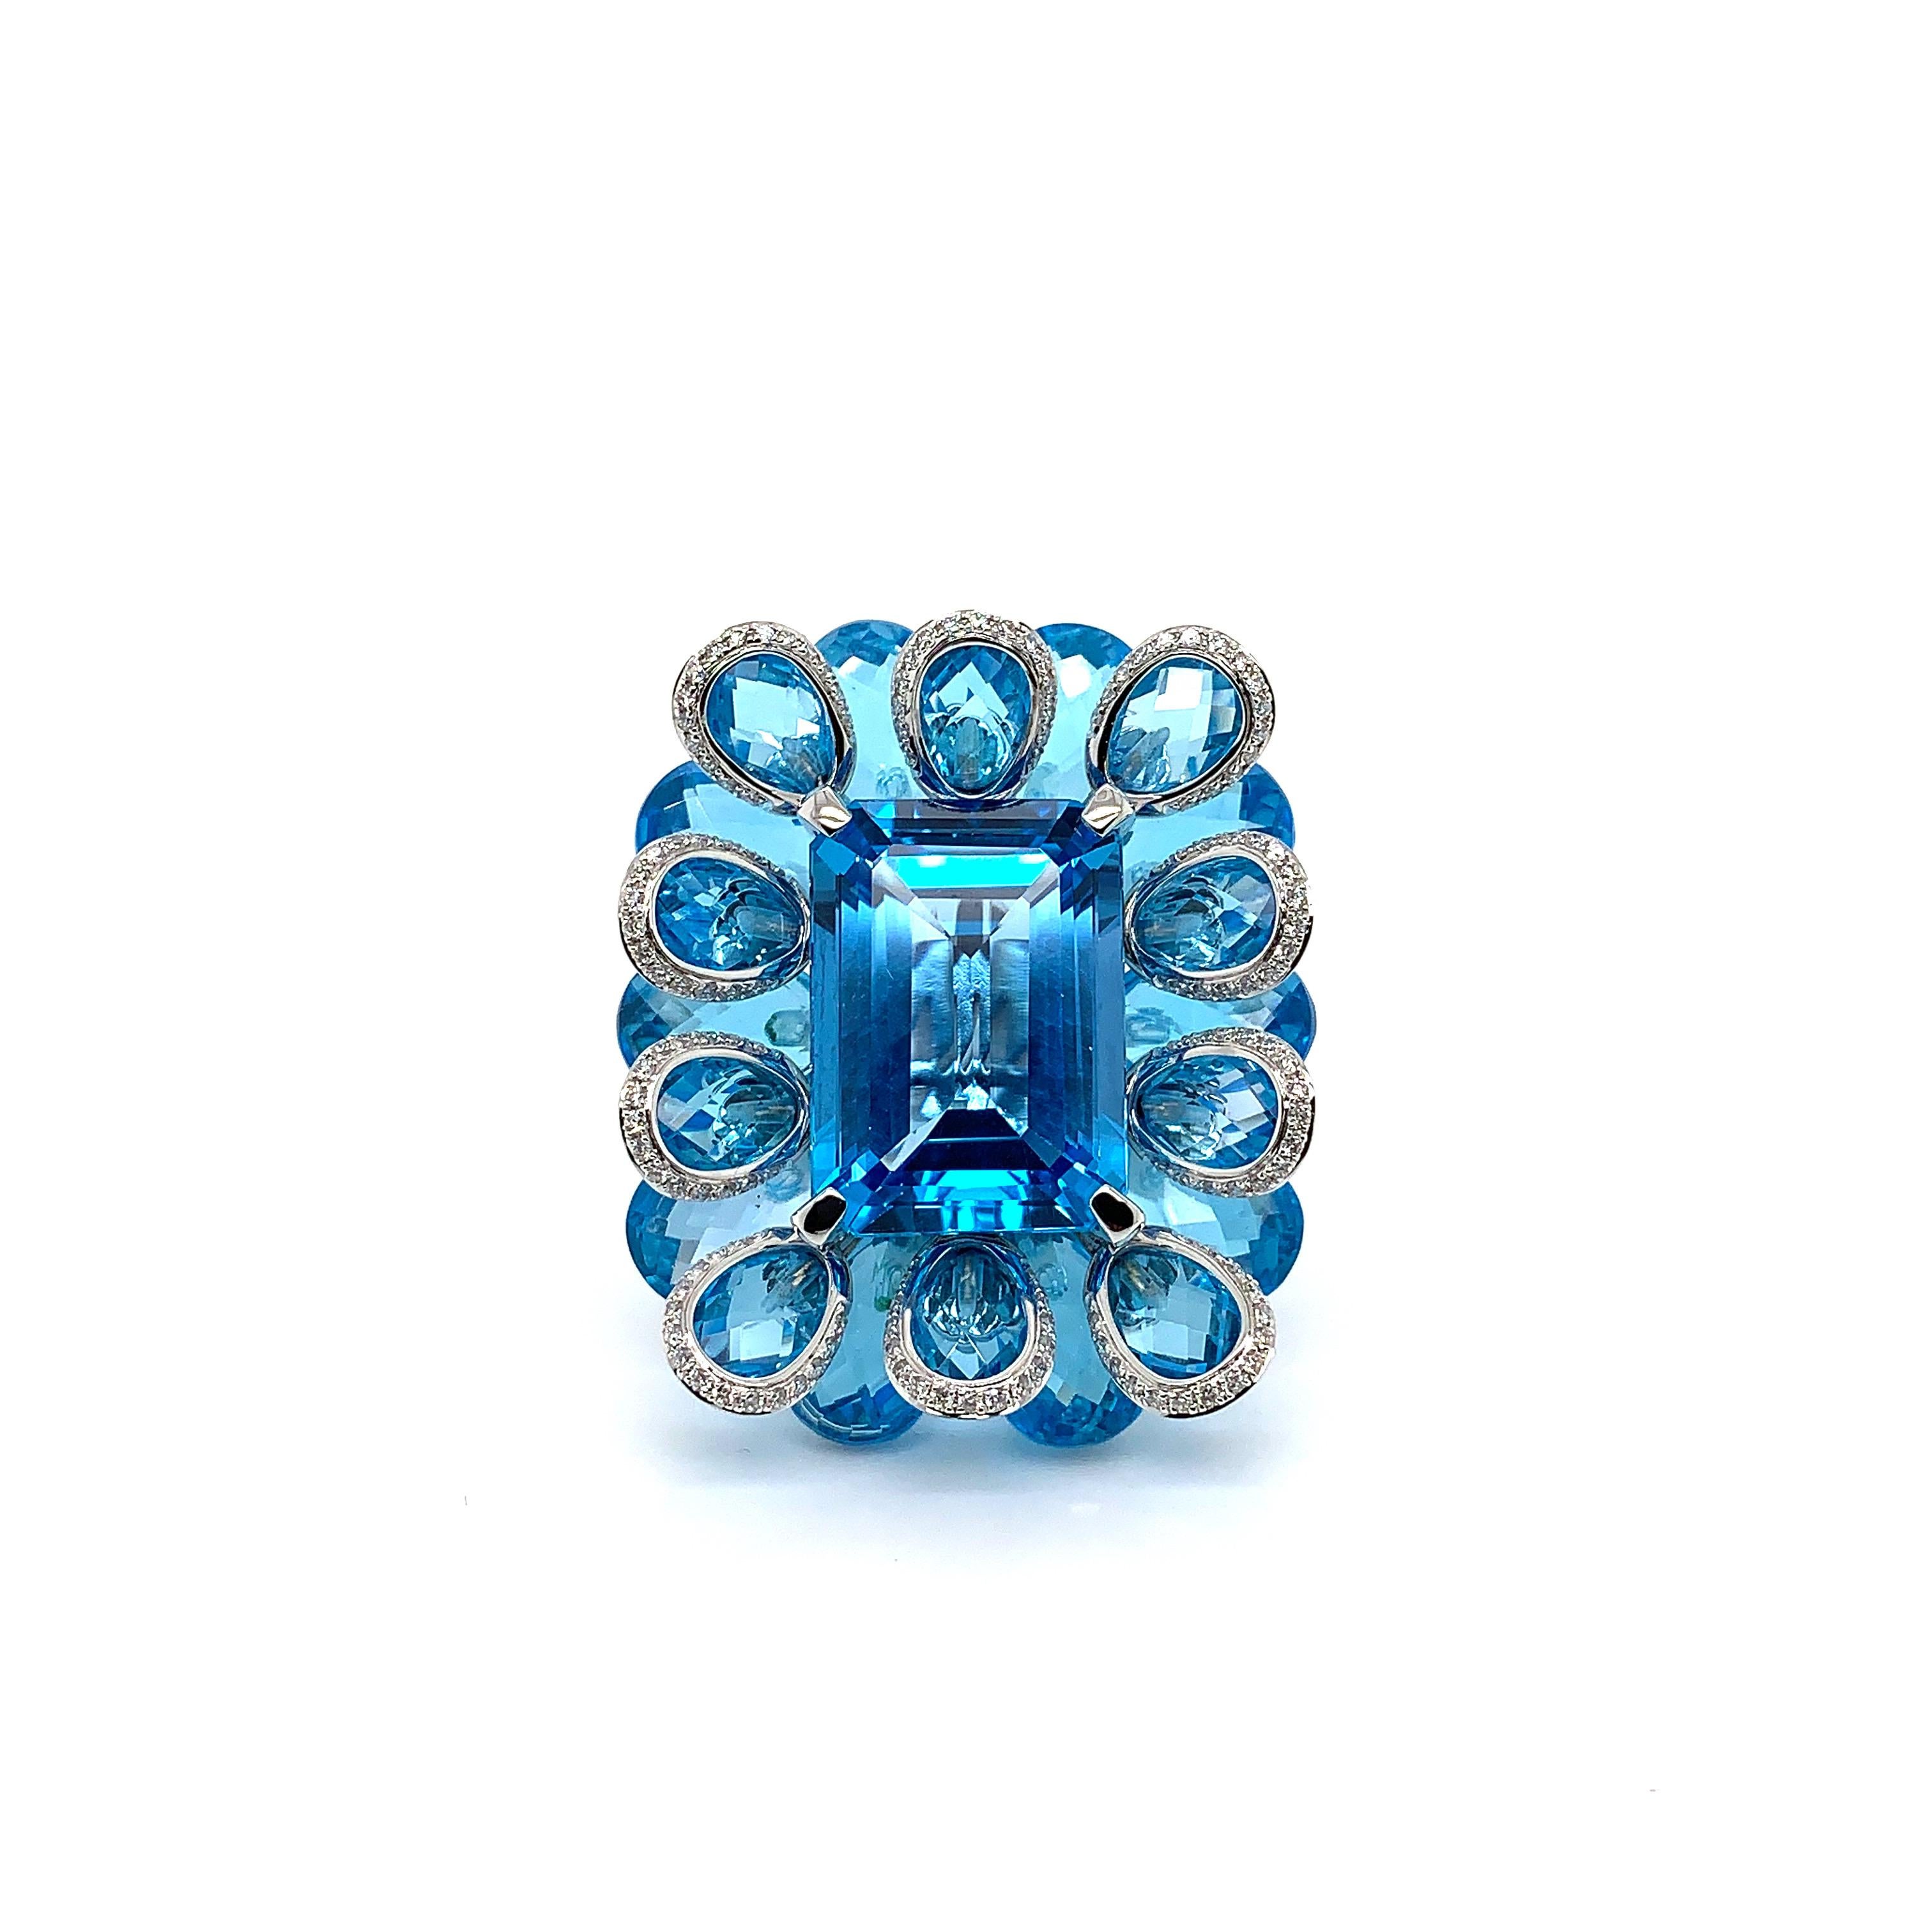 Cette bague présente une topaze bleue exquise de 21,51 carats comme pierre centrale. Cette magnifique pierre précieuse est posée sur un lit de succulentes briolettes de topaze bleue pour mettre en valeur la teinte paisible des pierres précieuses. La